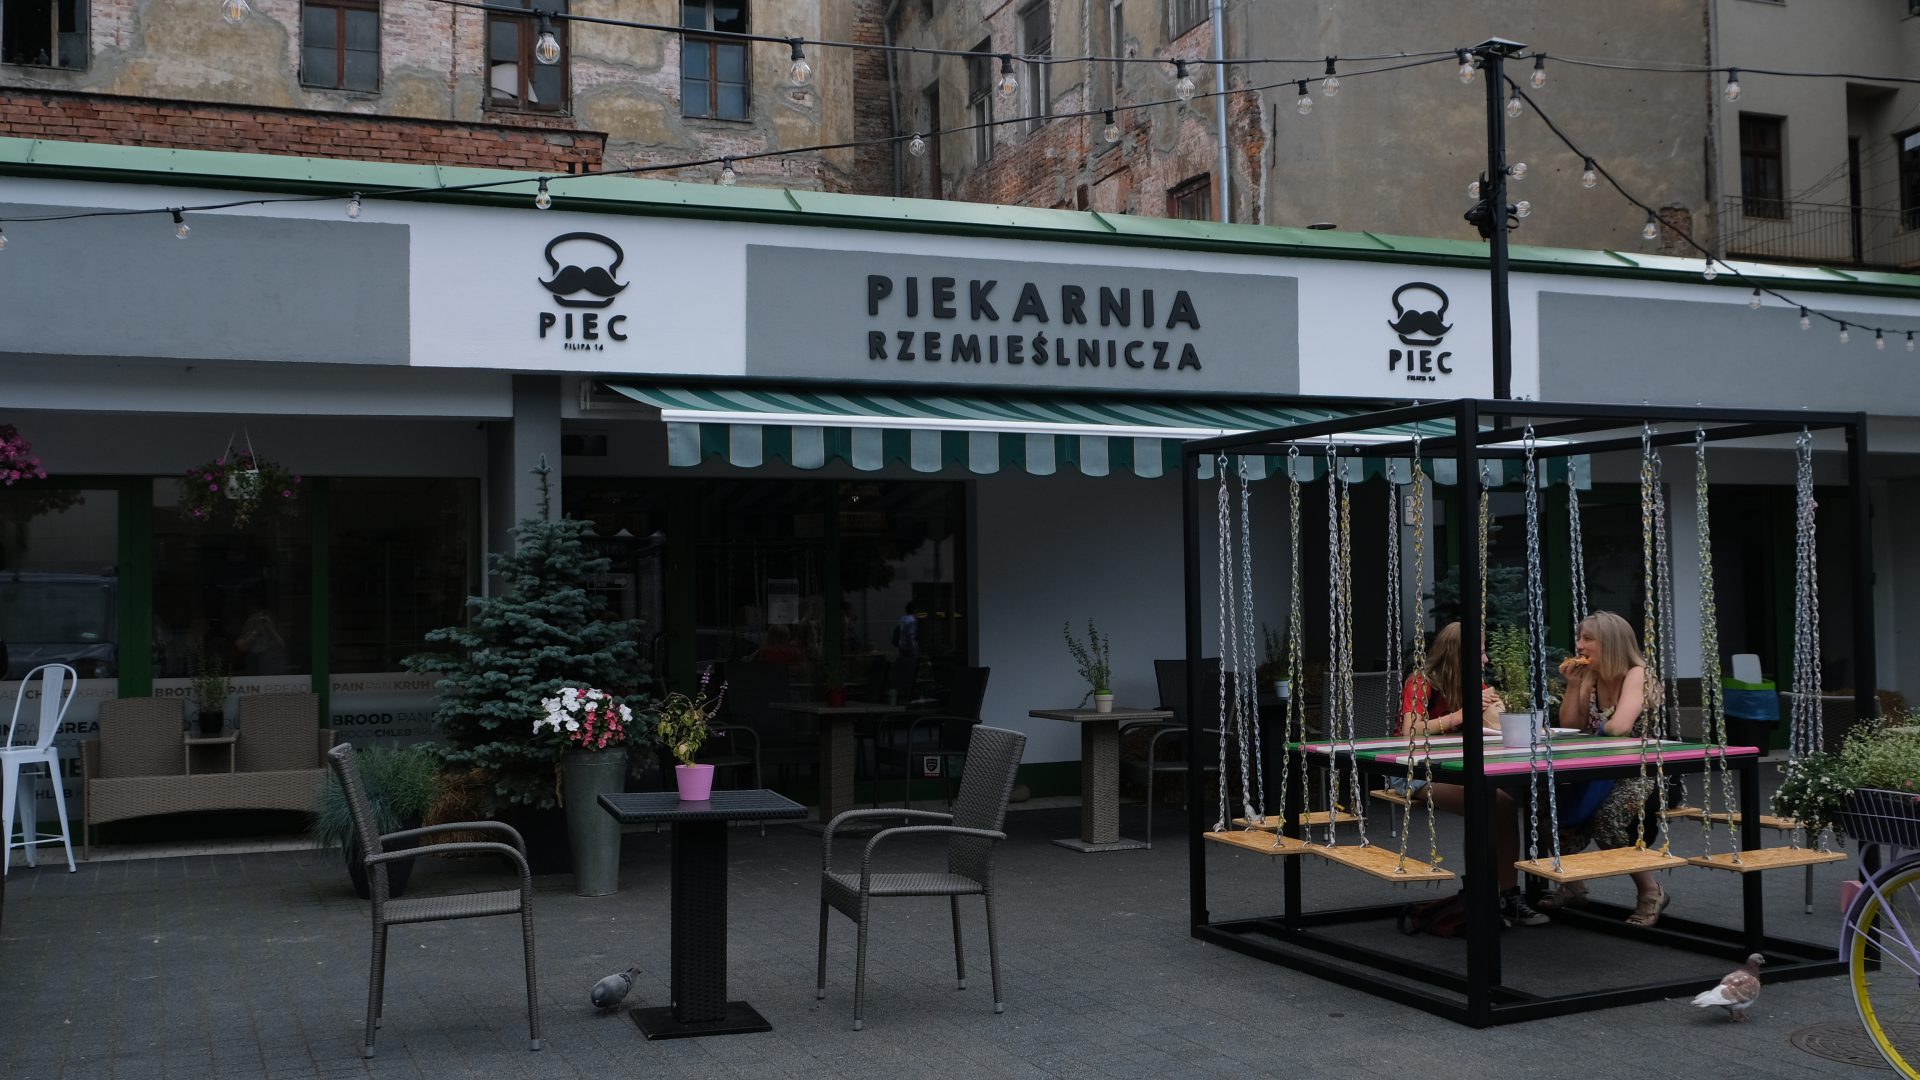 Piekarnie Rzemieślnicze Kraków Piec